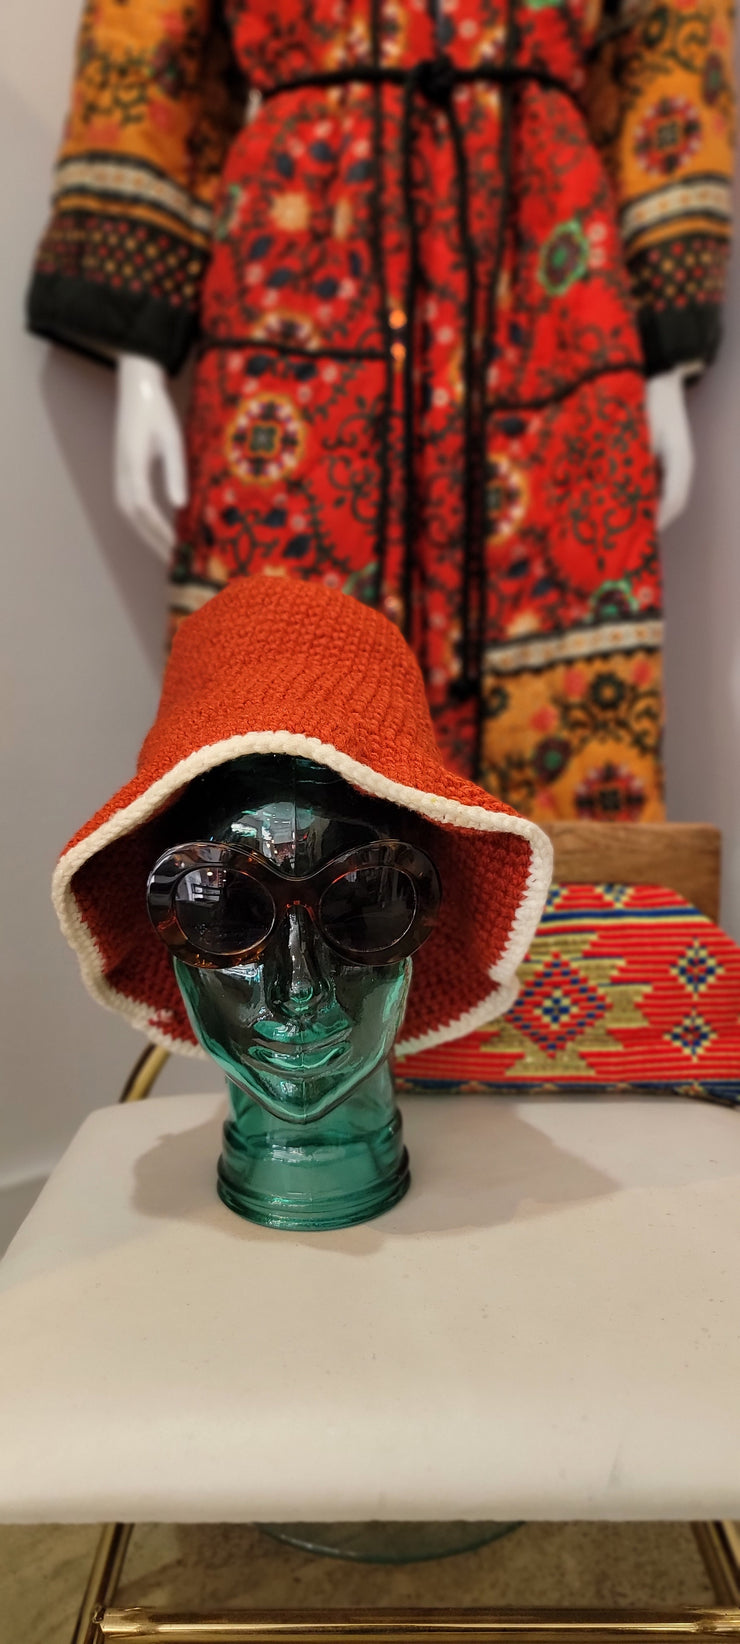 Vintage 70s Bohemian Hippy Rust Orange Ivory Crochet Knit Bucket Hat